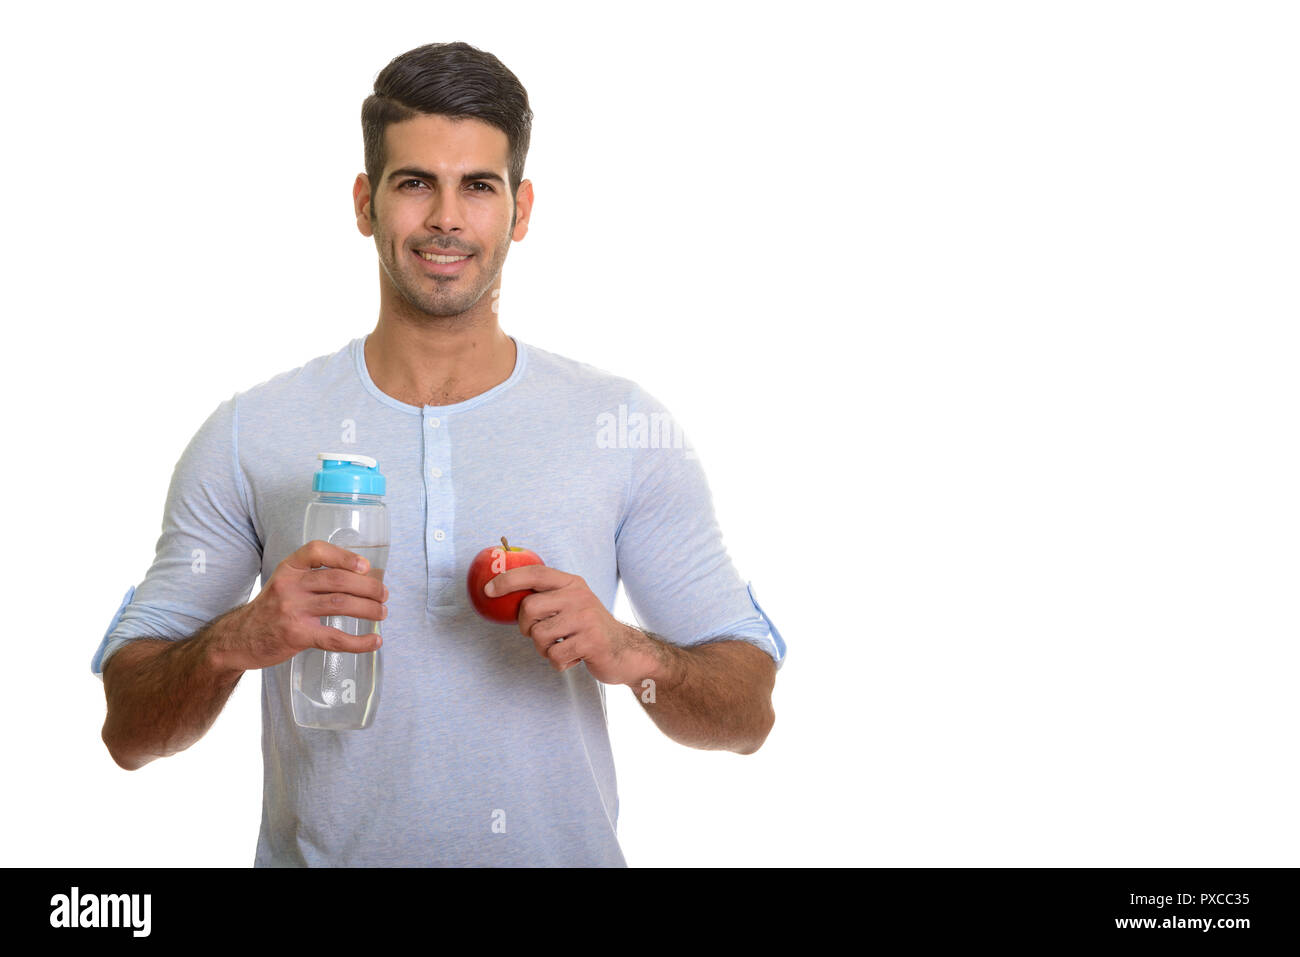 Les jeunes professionnels Persian man smiling and holding water bottle et rouge Banque D'Images